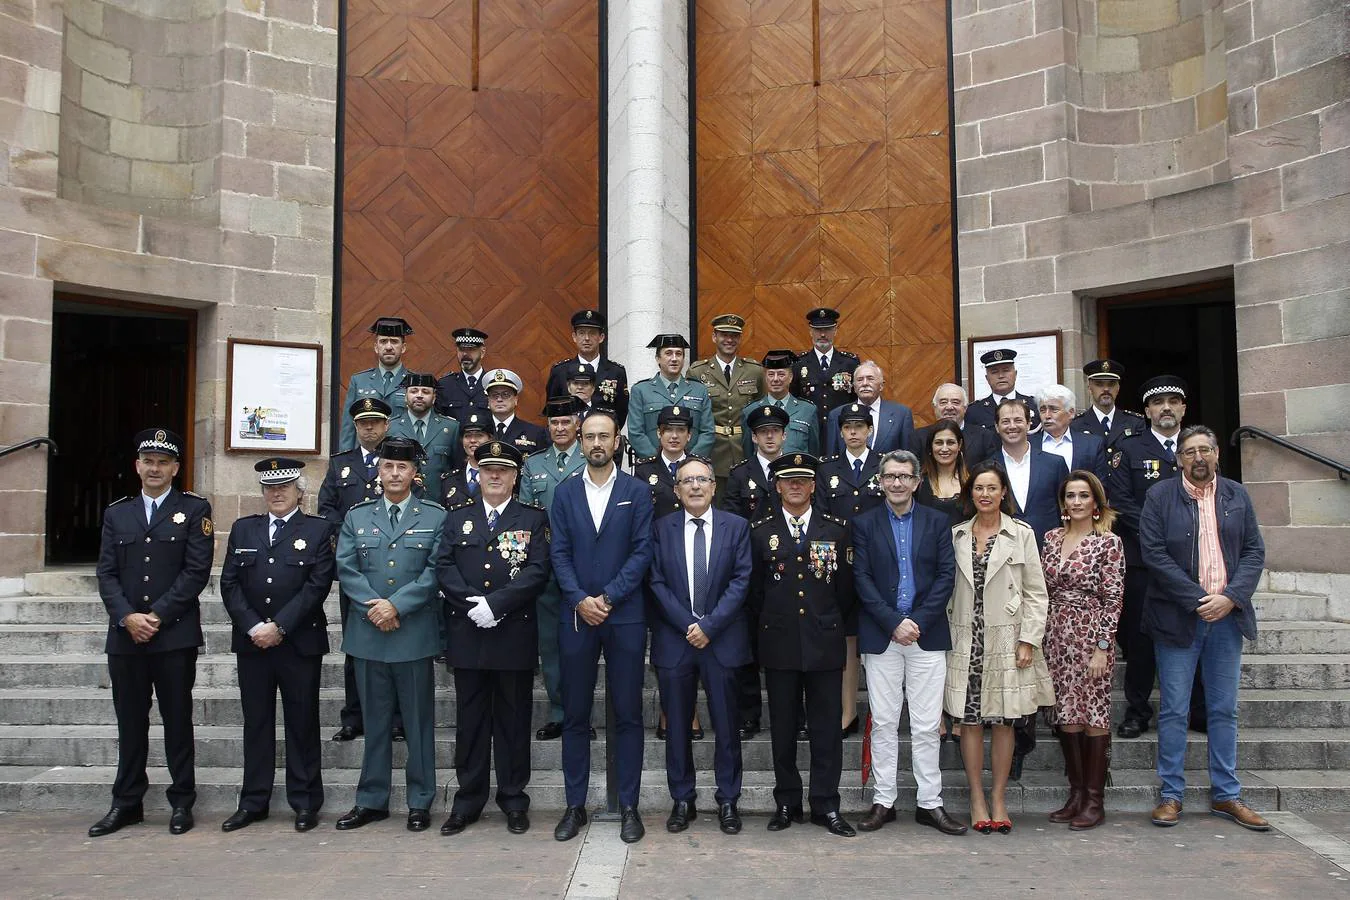 Fotos: La Policía Nacional celebra a sus patronos en Torrelavega